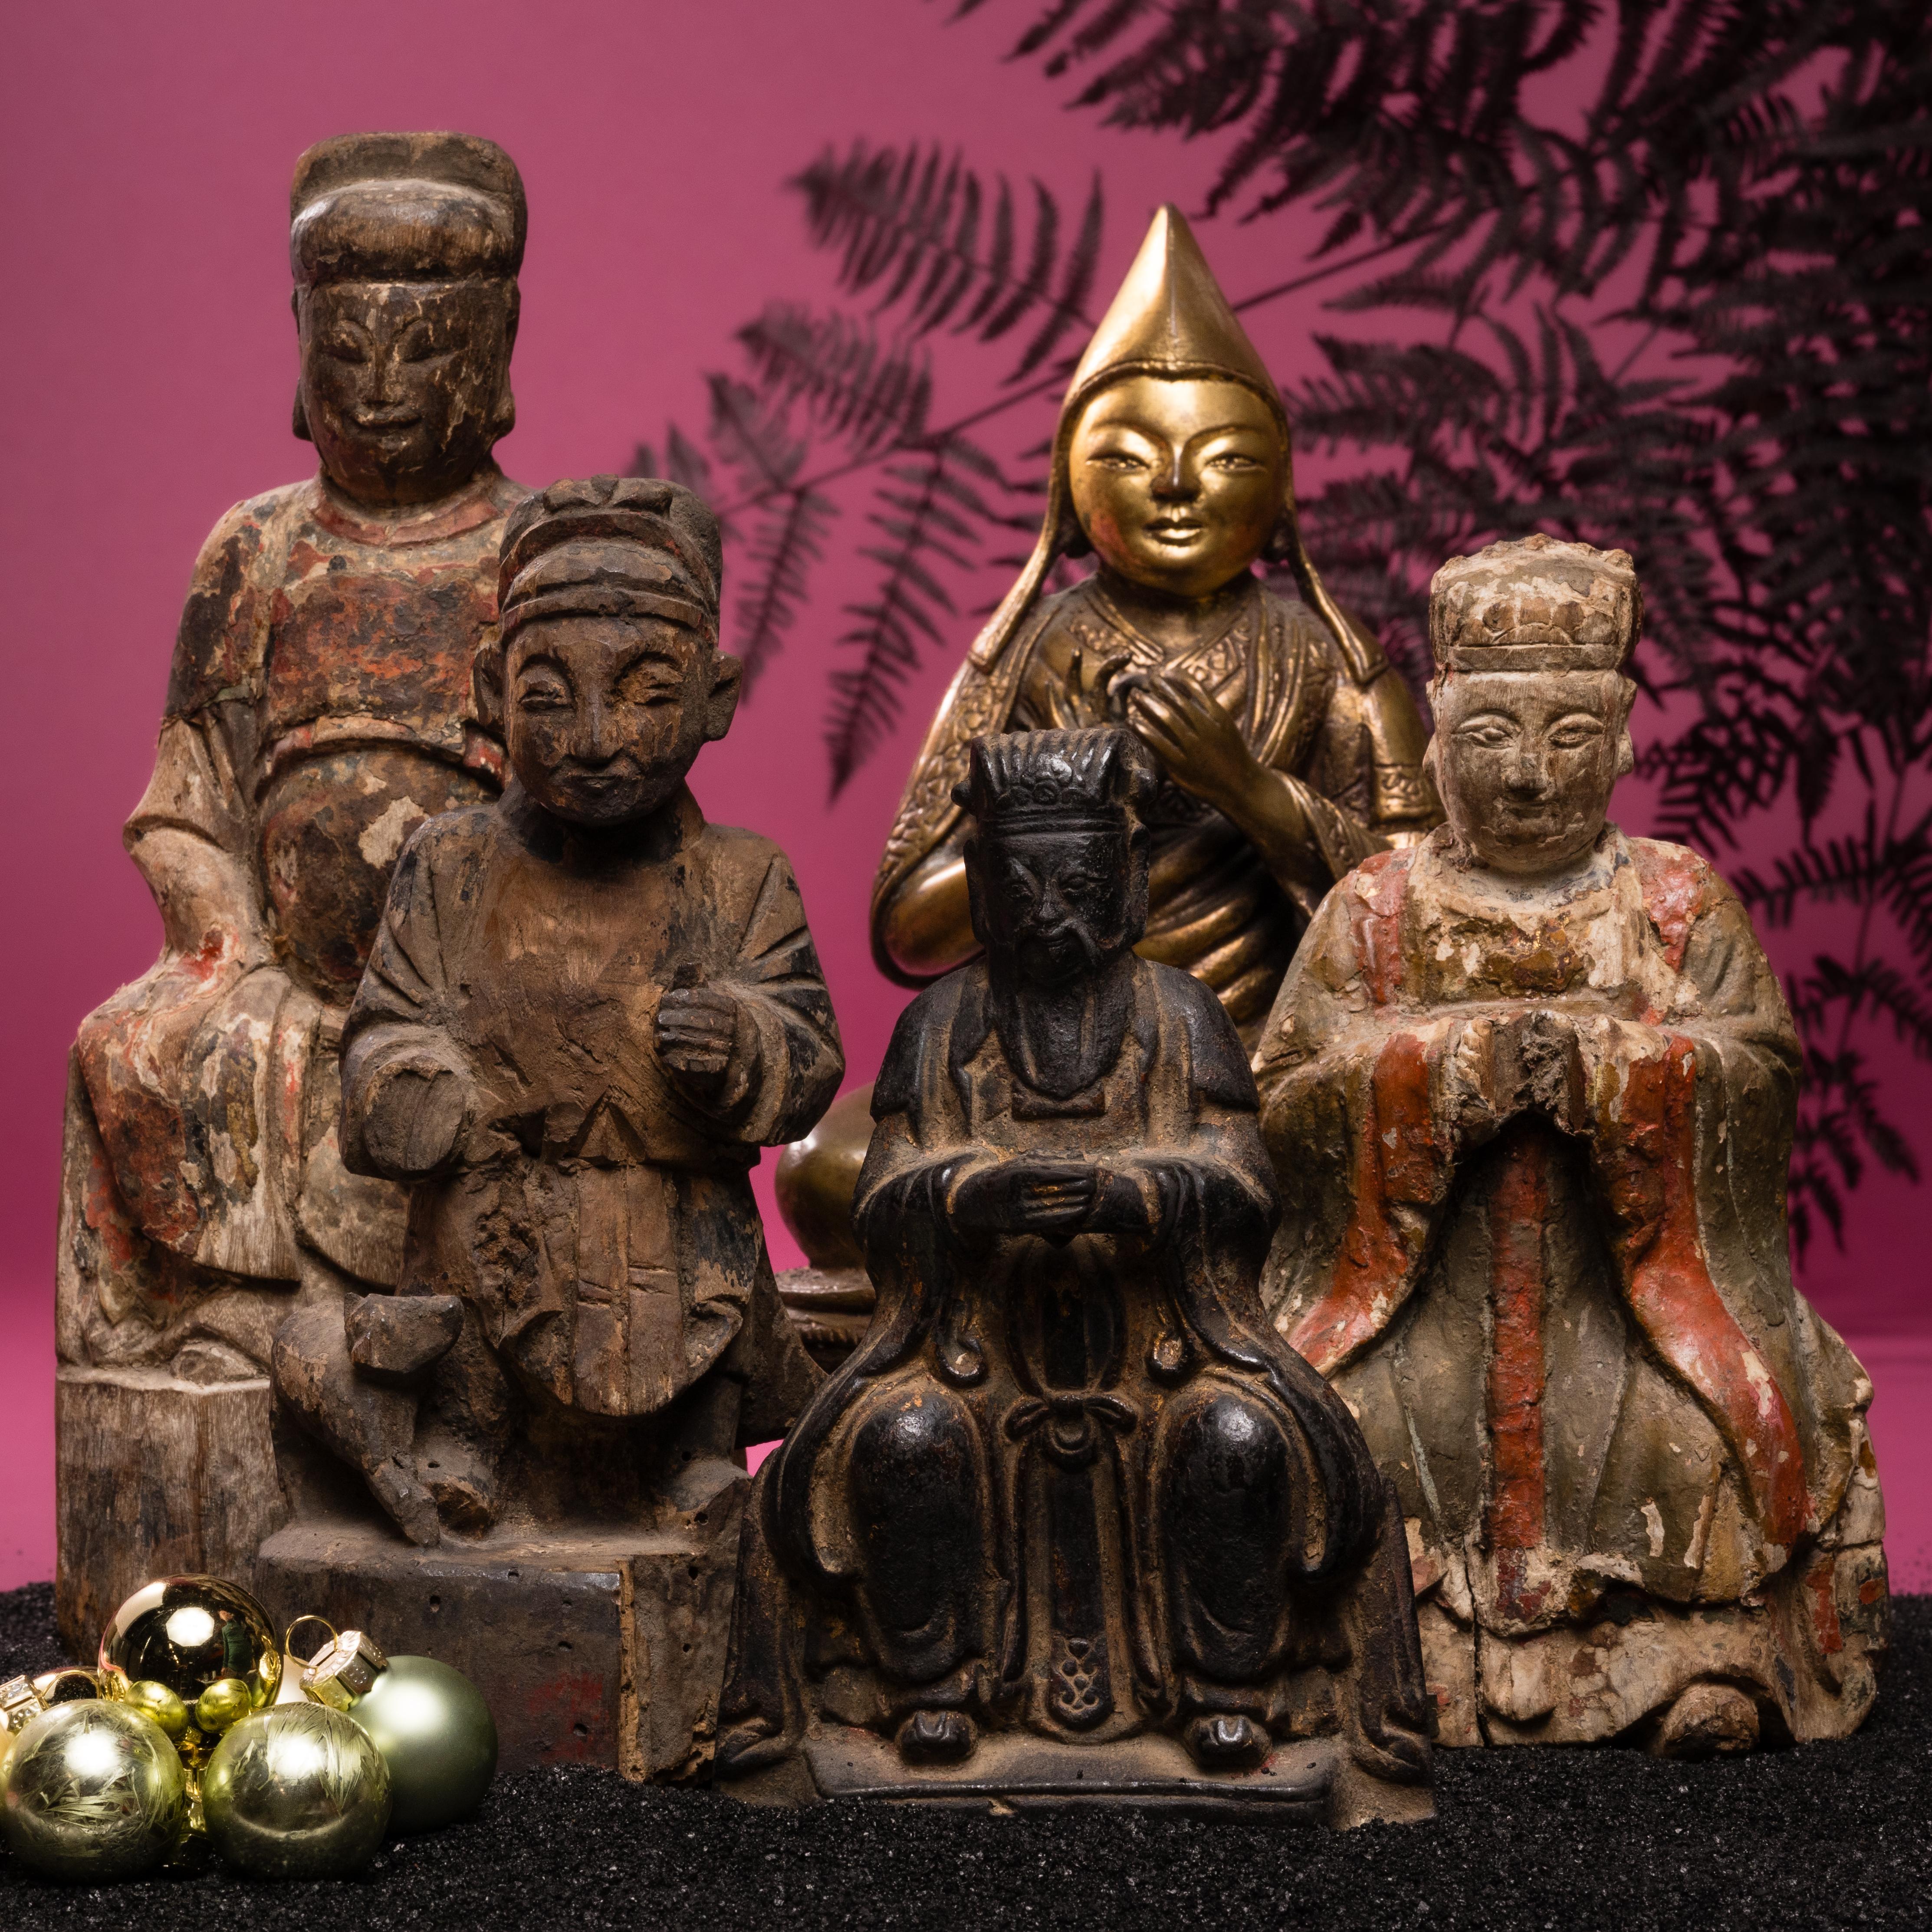 Cette figurine en bois sculpté du XVIIIe siècle représente probablement l'Empereur de Jade, le monarque suprême du ciel et de la terre dans le folklore chinois et la mythologie taoïste. Régisseur de toutes les divinités et défenseur bienveillant de